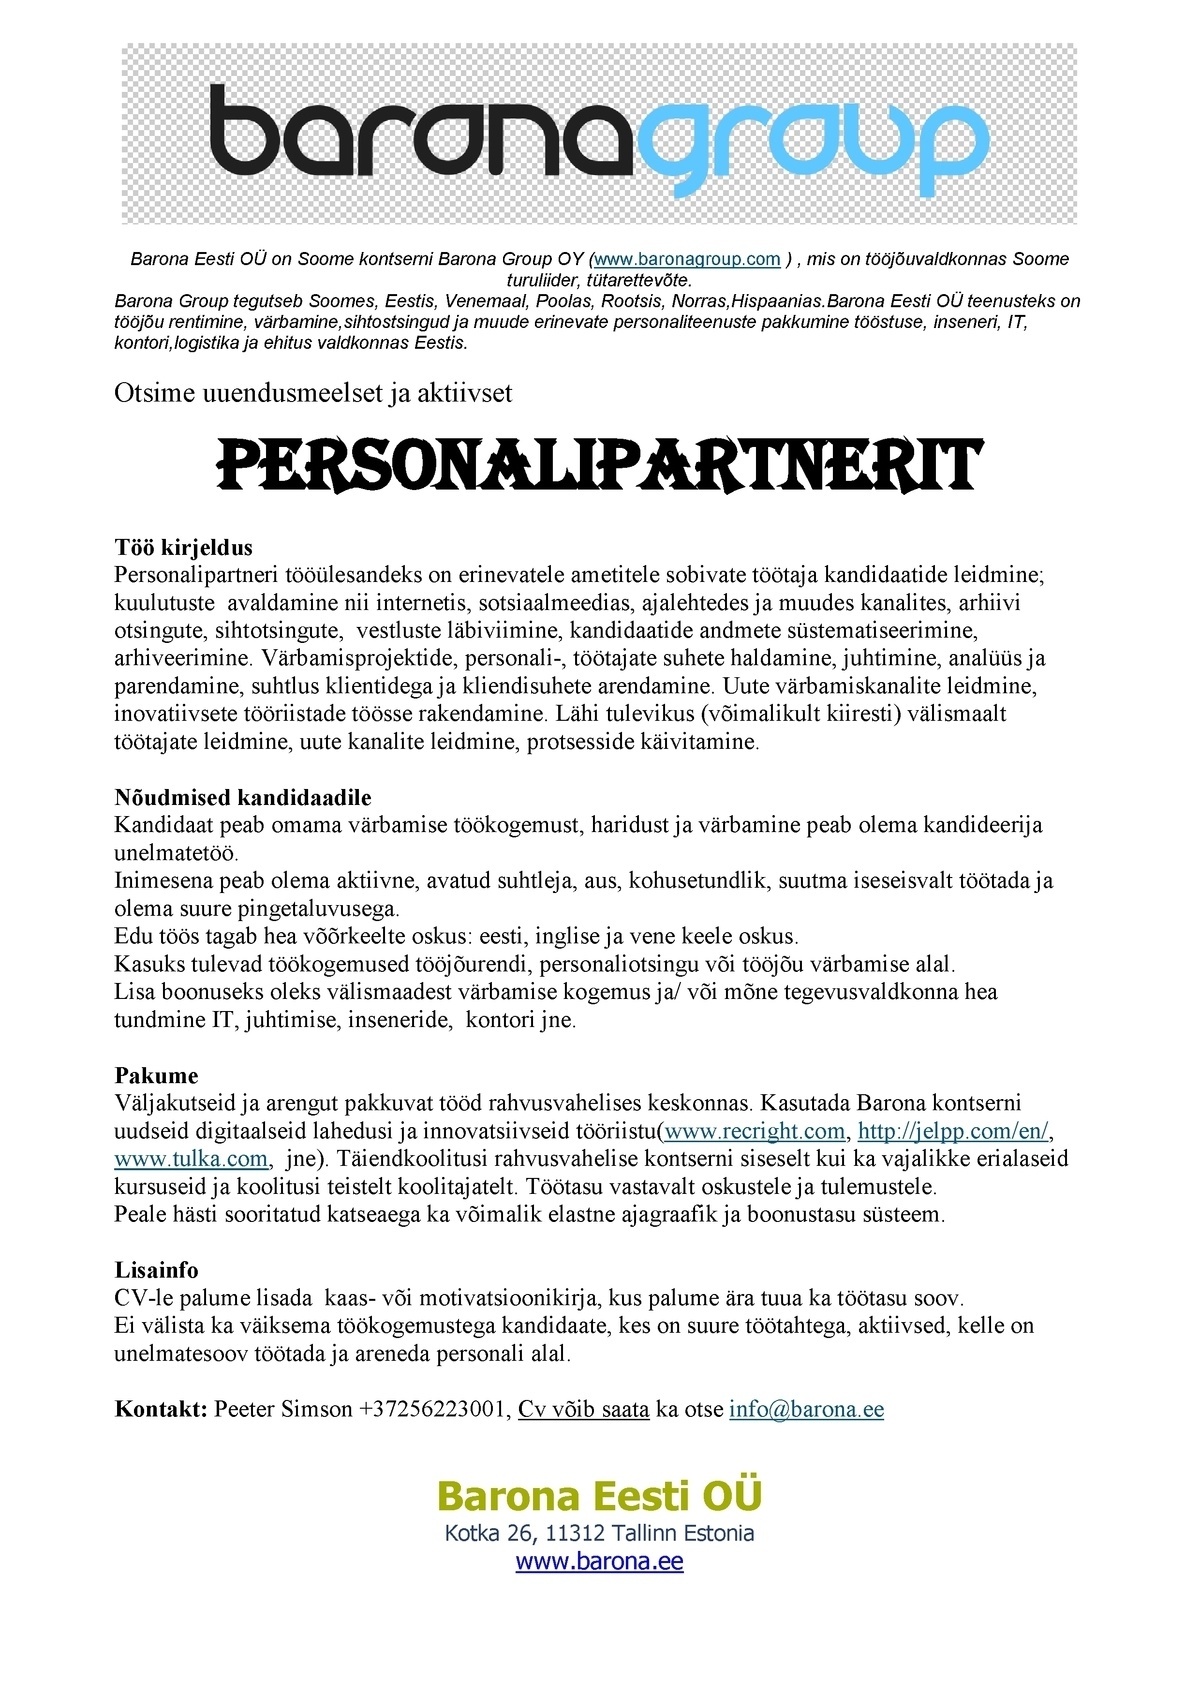 Barona Eesti OÜ Personalipartner